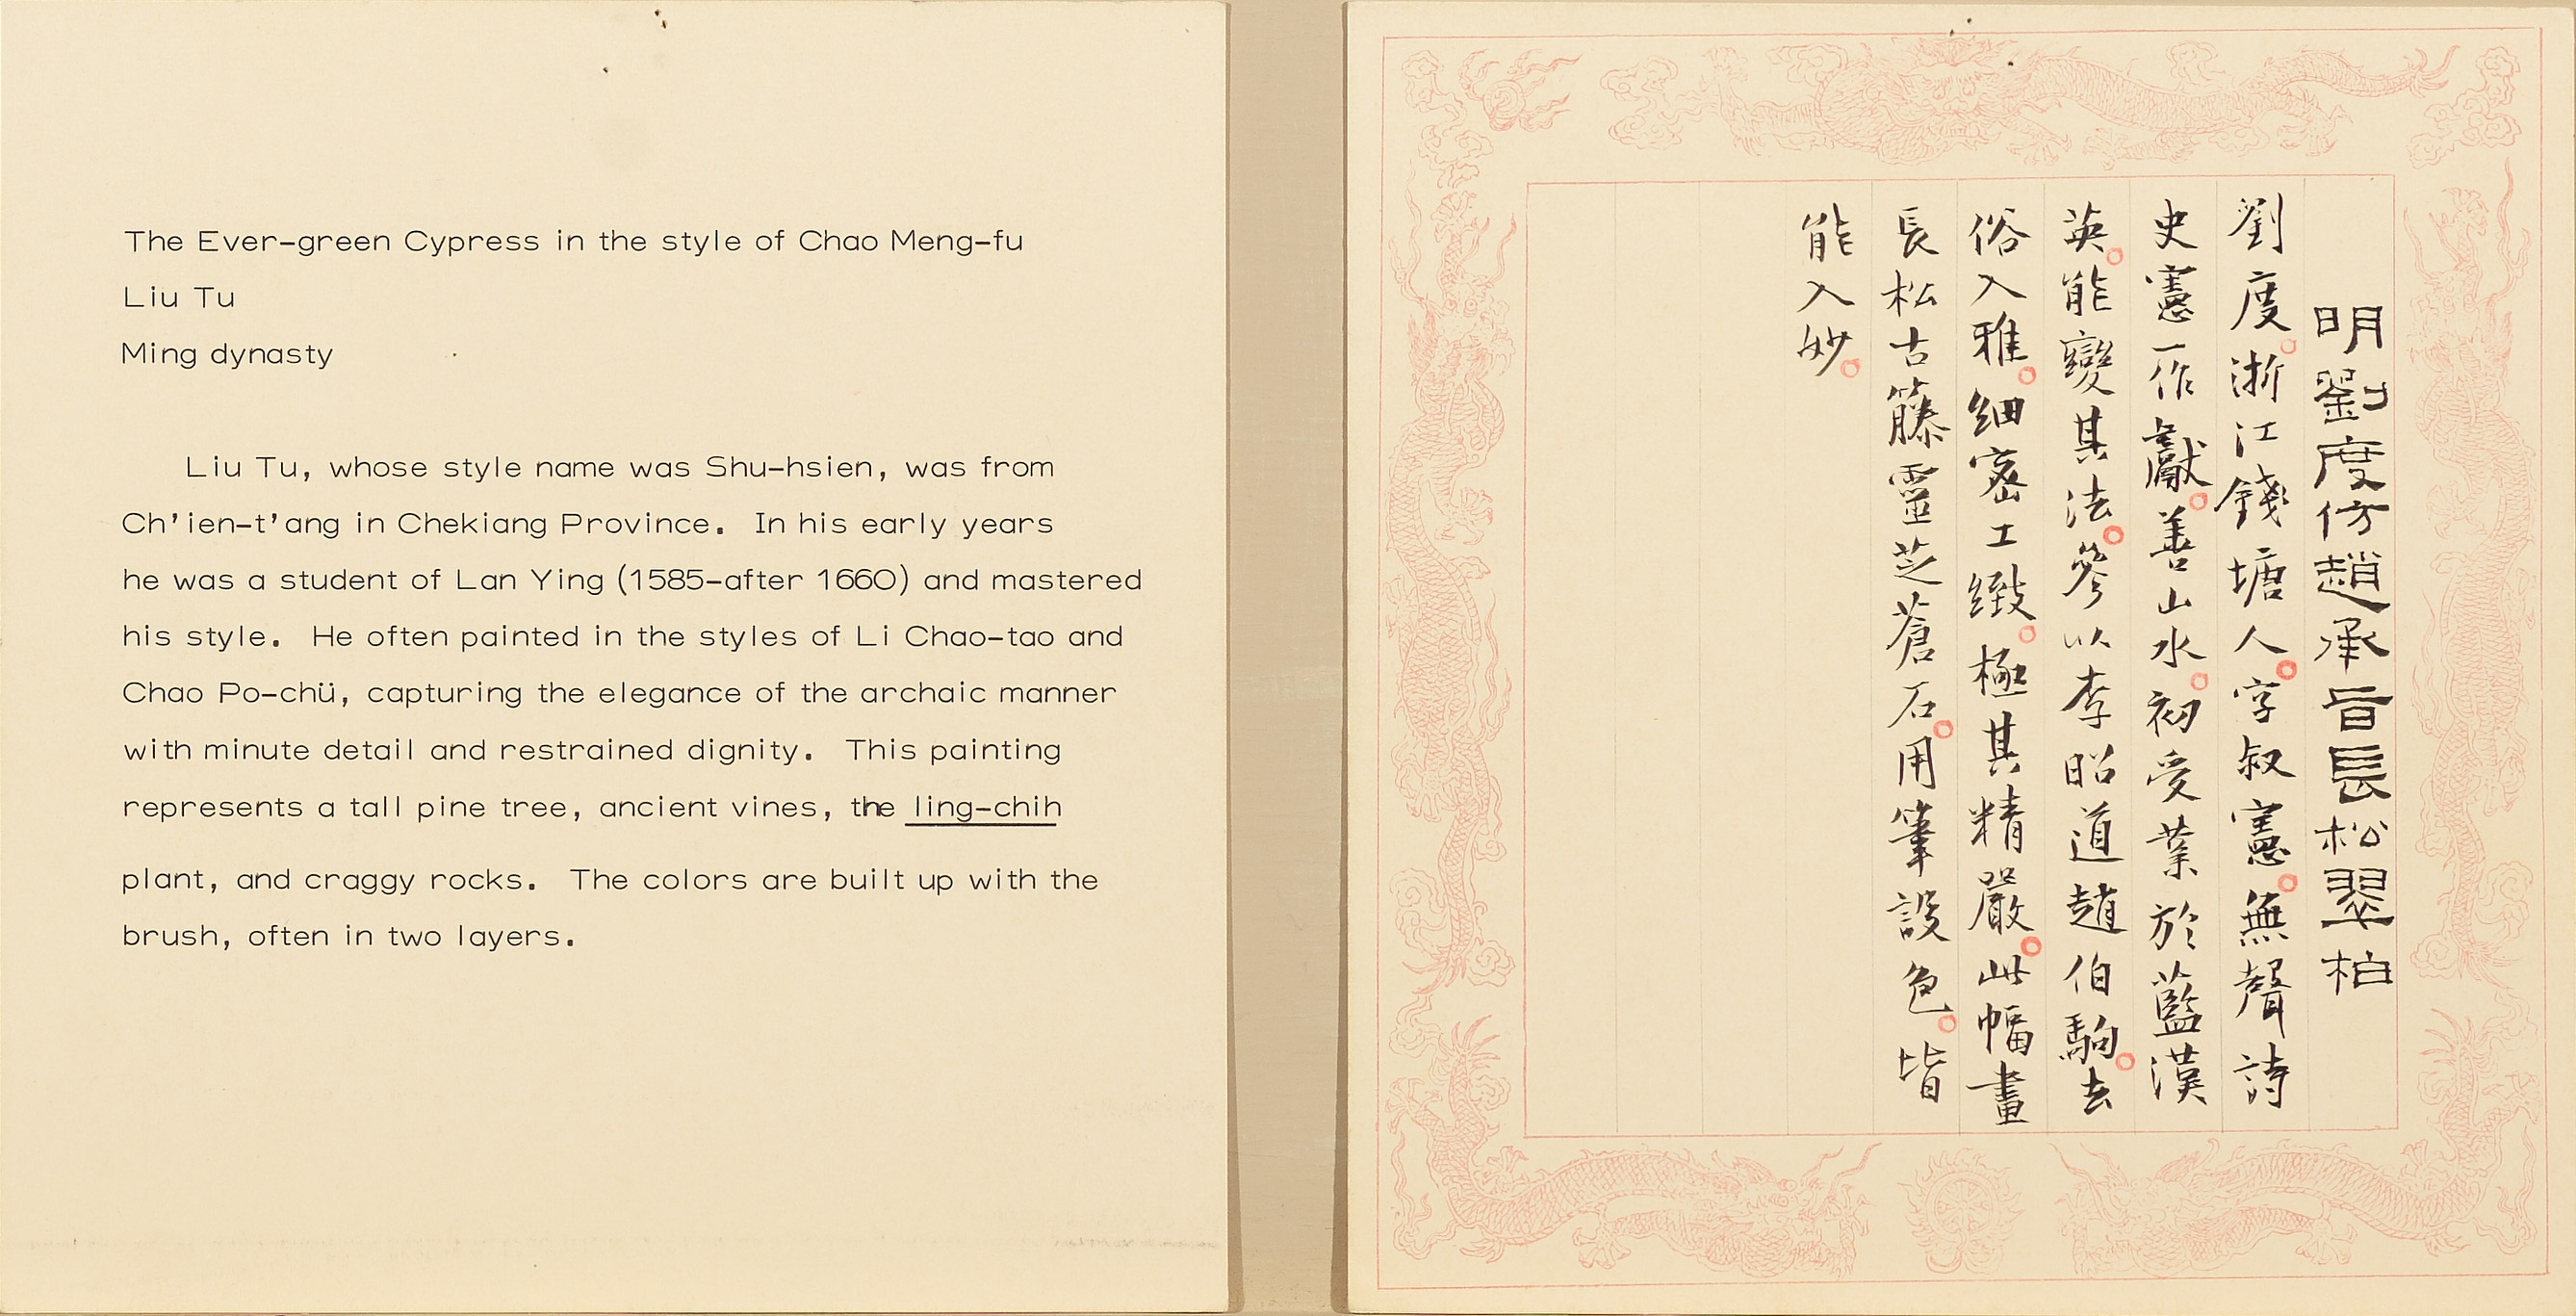 民國七十年代已開始使用的龍紋邊框說明卡式樣，早期仍有墨書的版本。此說明卡即為江兆申先生書蹟。